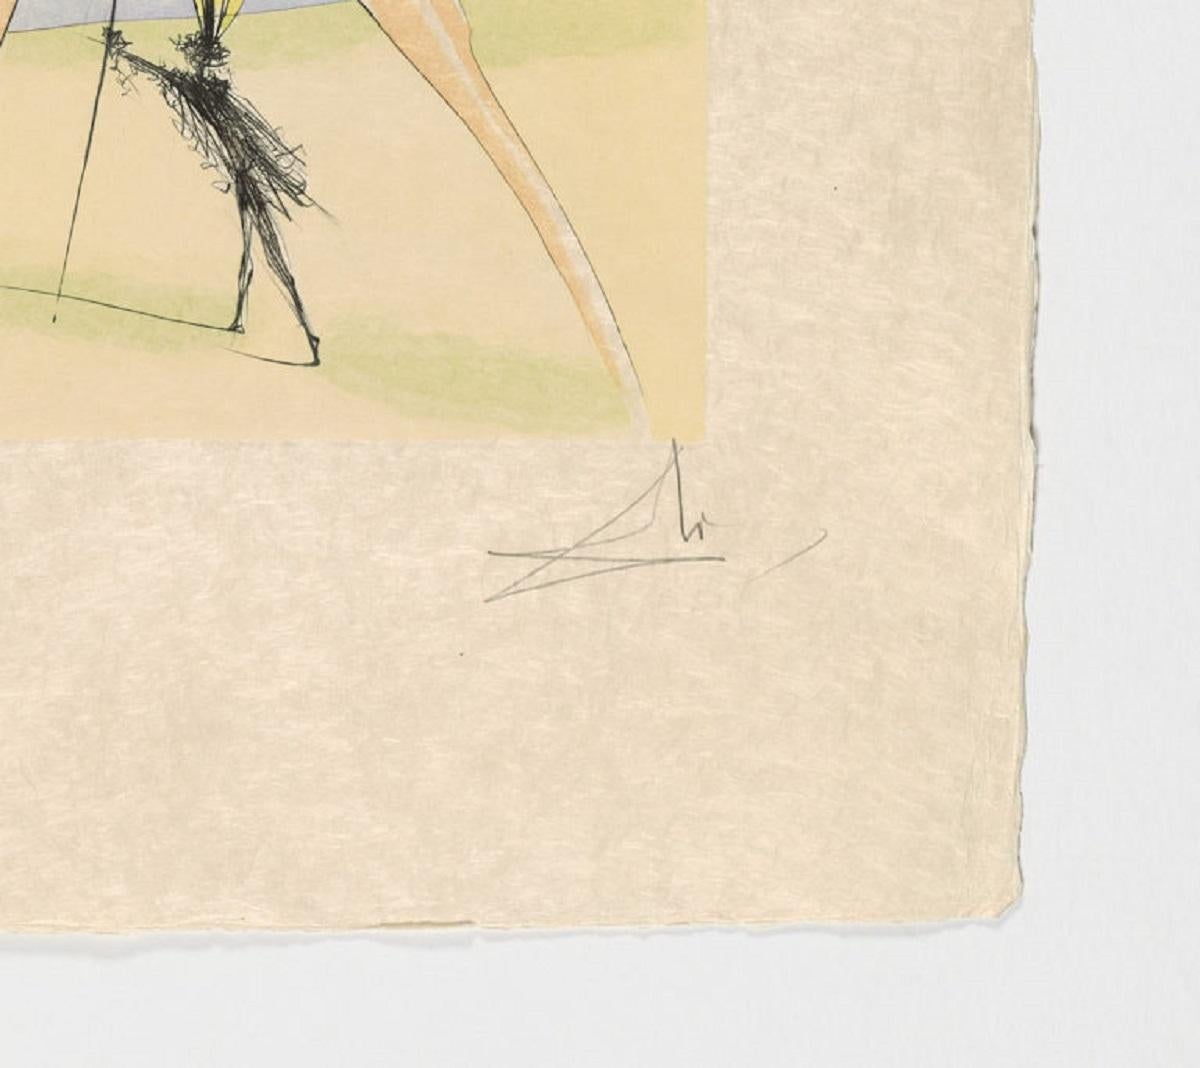 Salvador Dali (Espagne, 1904-1989)
Le Singe et le Léopard, 1974
Serie : Le Bestiaire de La Fontaine
pointe sèche, aquatinte sur papier japonais
30.8 x 22.7 in. (78 x 57.5 cm.)
Edition de 250
Non encadré
ID : DAL2001-009
Signé par l'auteur
Elle